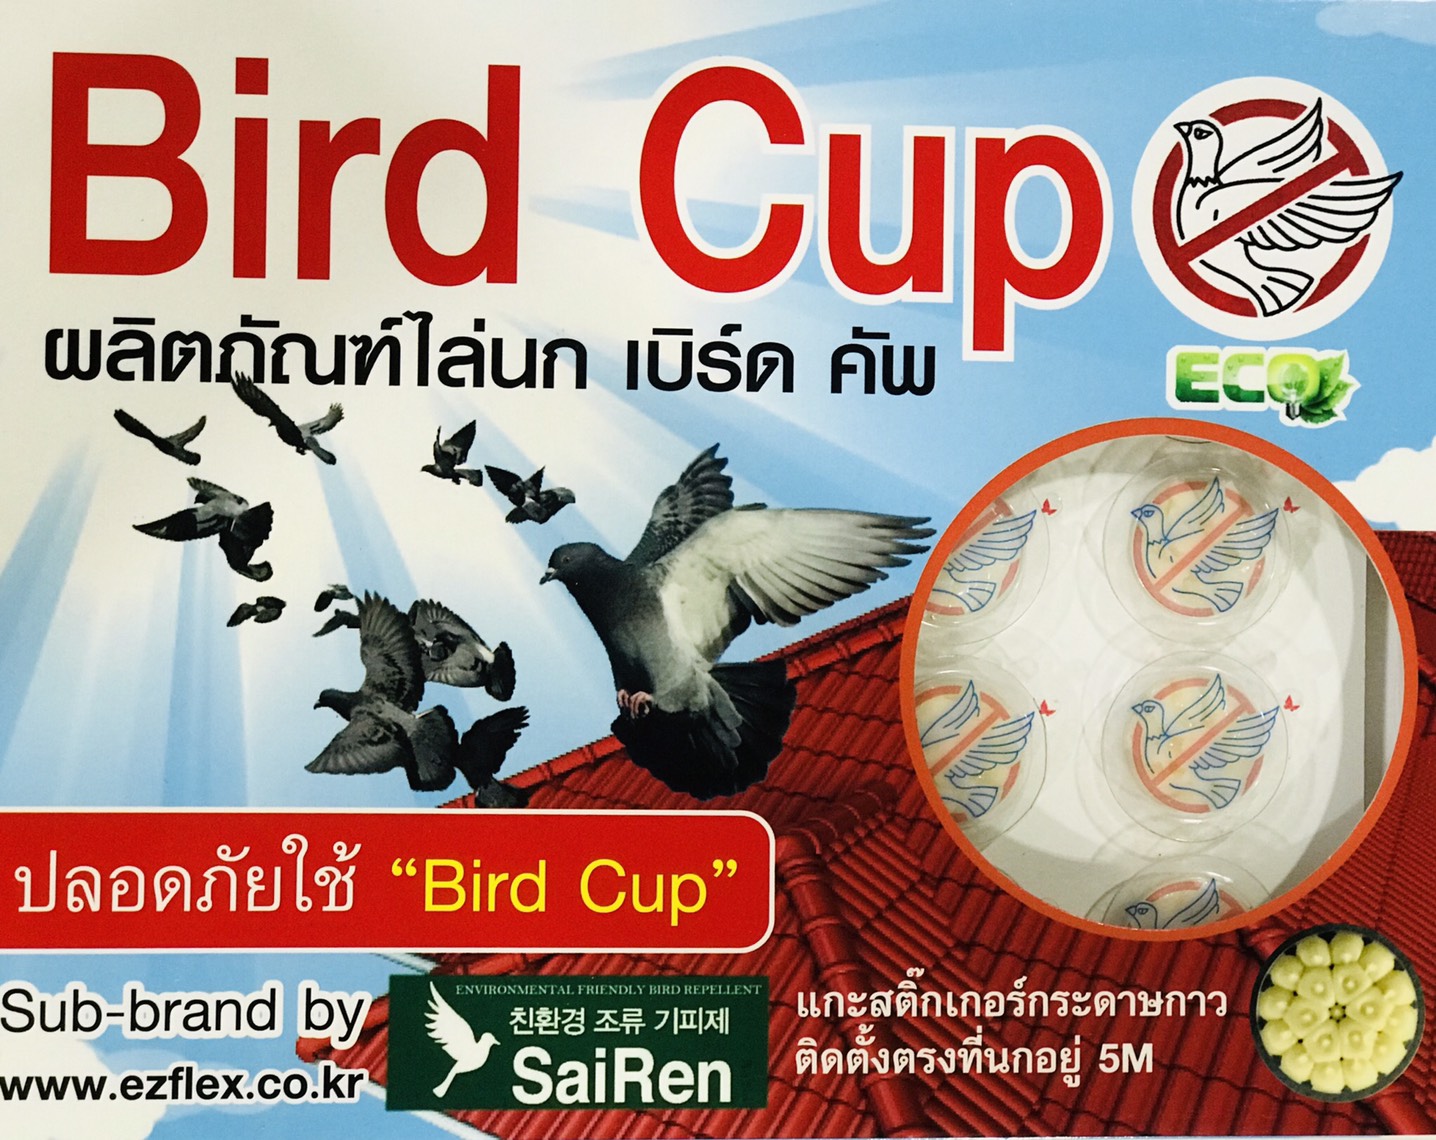 ไล่นก bird cup  วิธีกำจัดนก